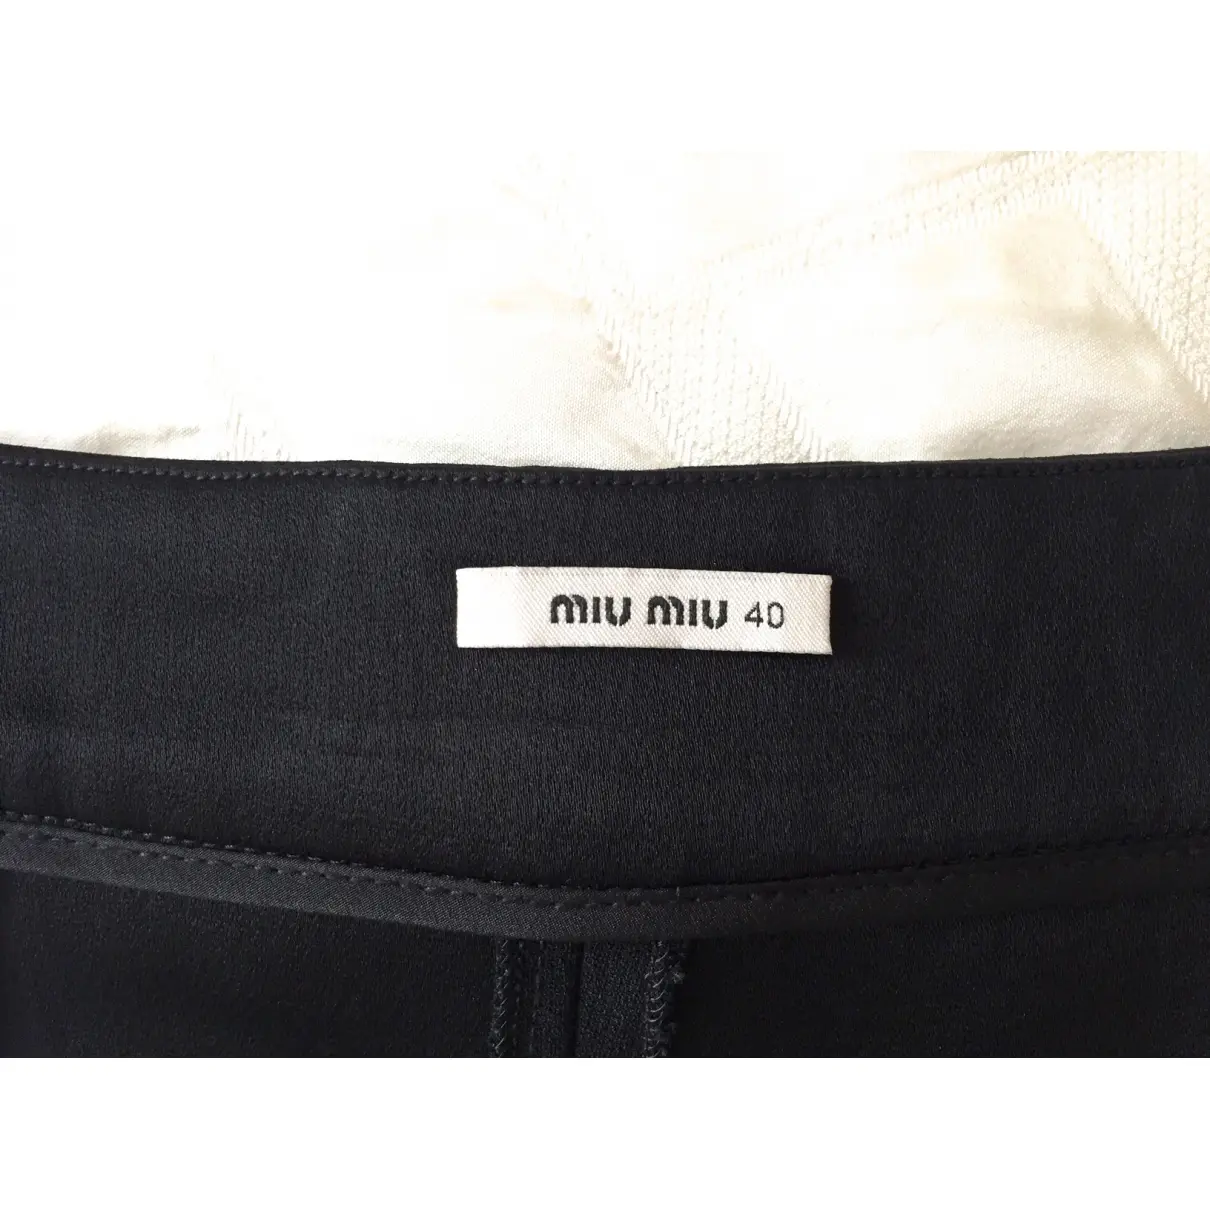 Buy Miu Miu Mini short online